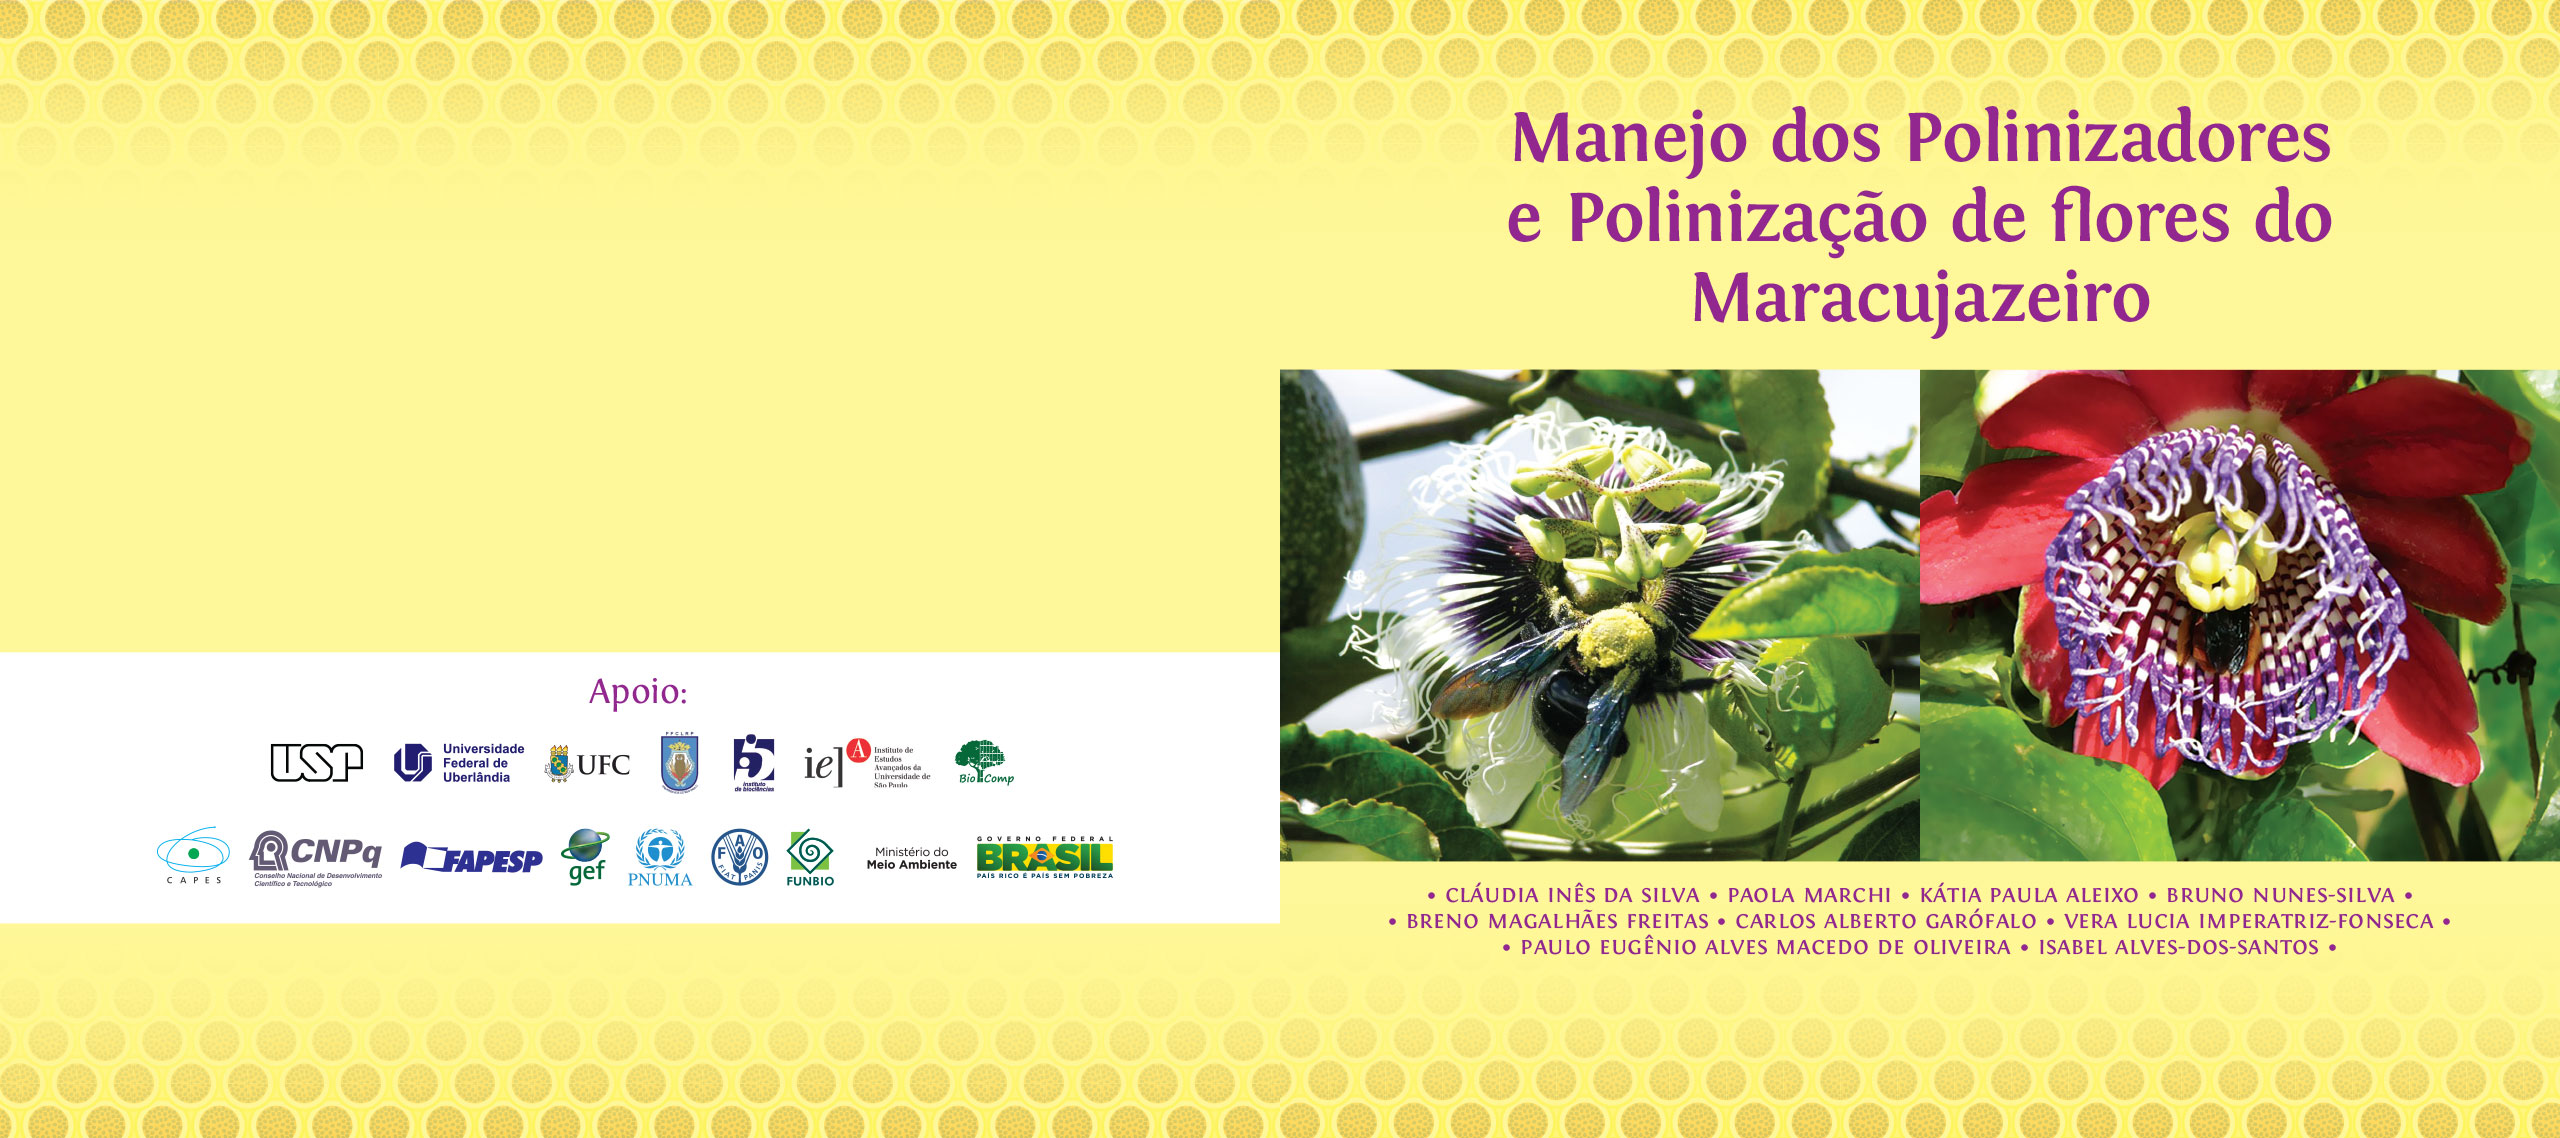 Capa do livro Manejo dos Polinizadores e Polinização de flores do Maracujazeiro